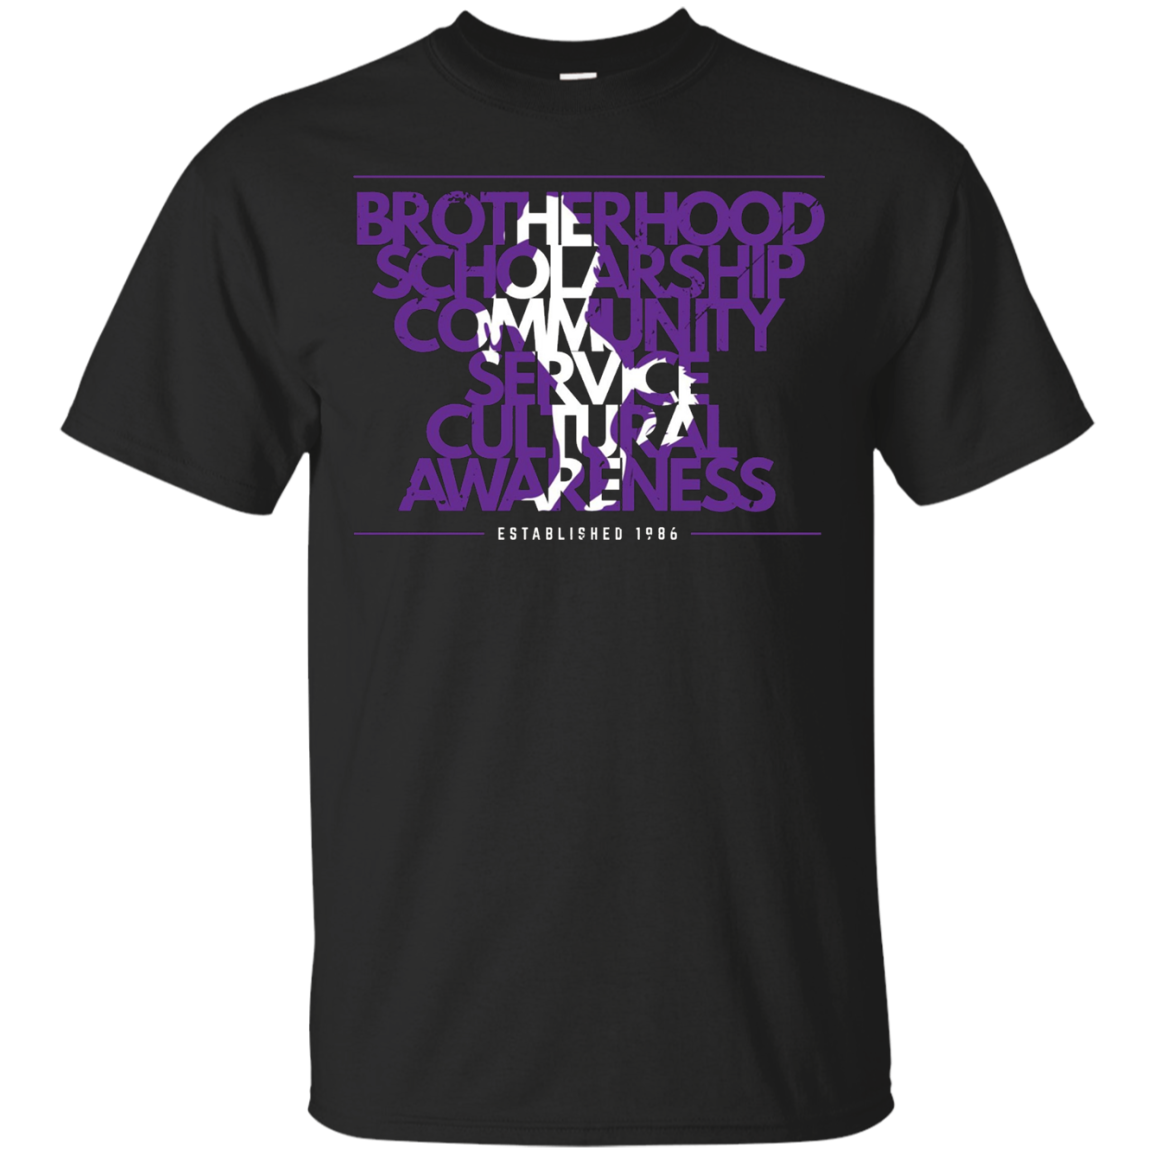 Sigma Lambda Beta - Principles Shirt 1986 Brotherhood